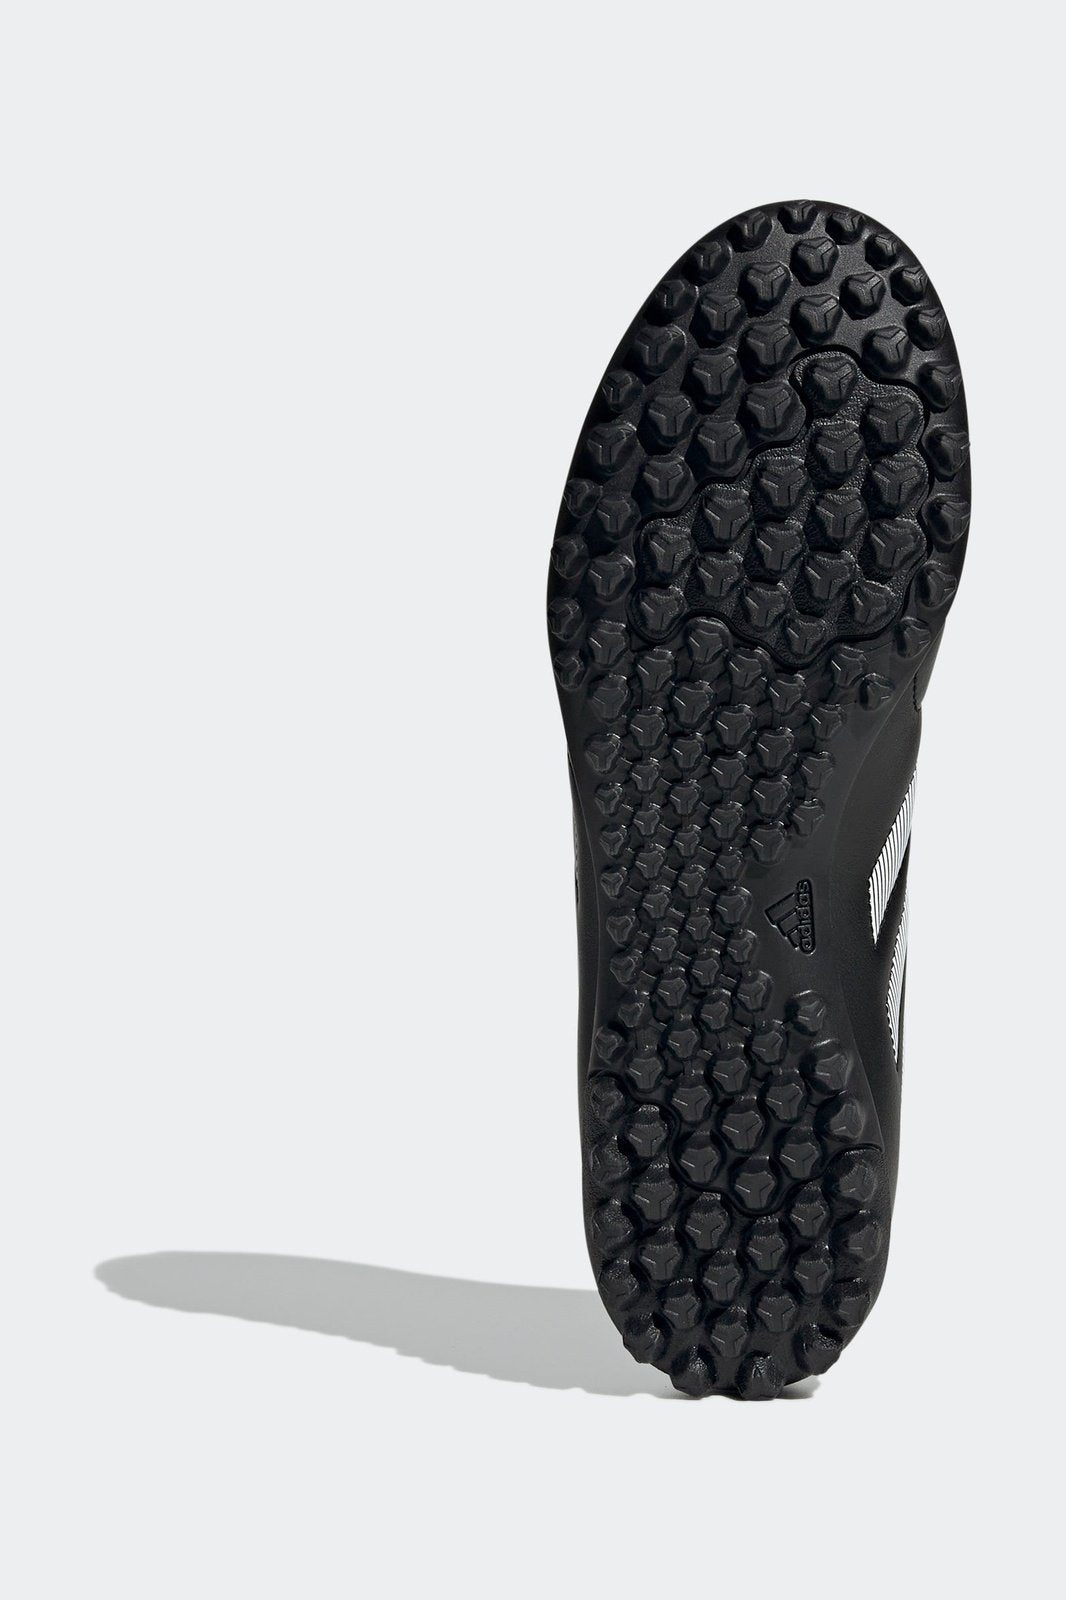 נעלי קטרגל לגברים  GOLETTO VIII TURF בצבע שחור